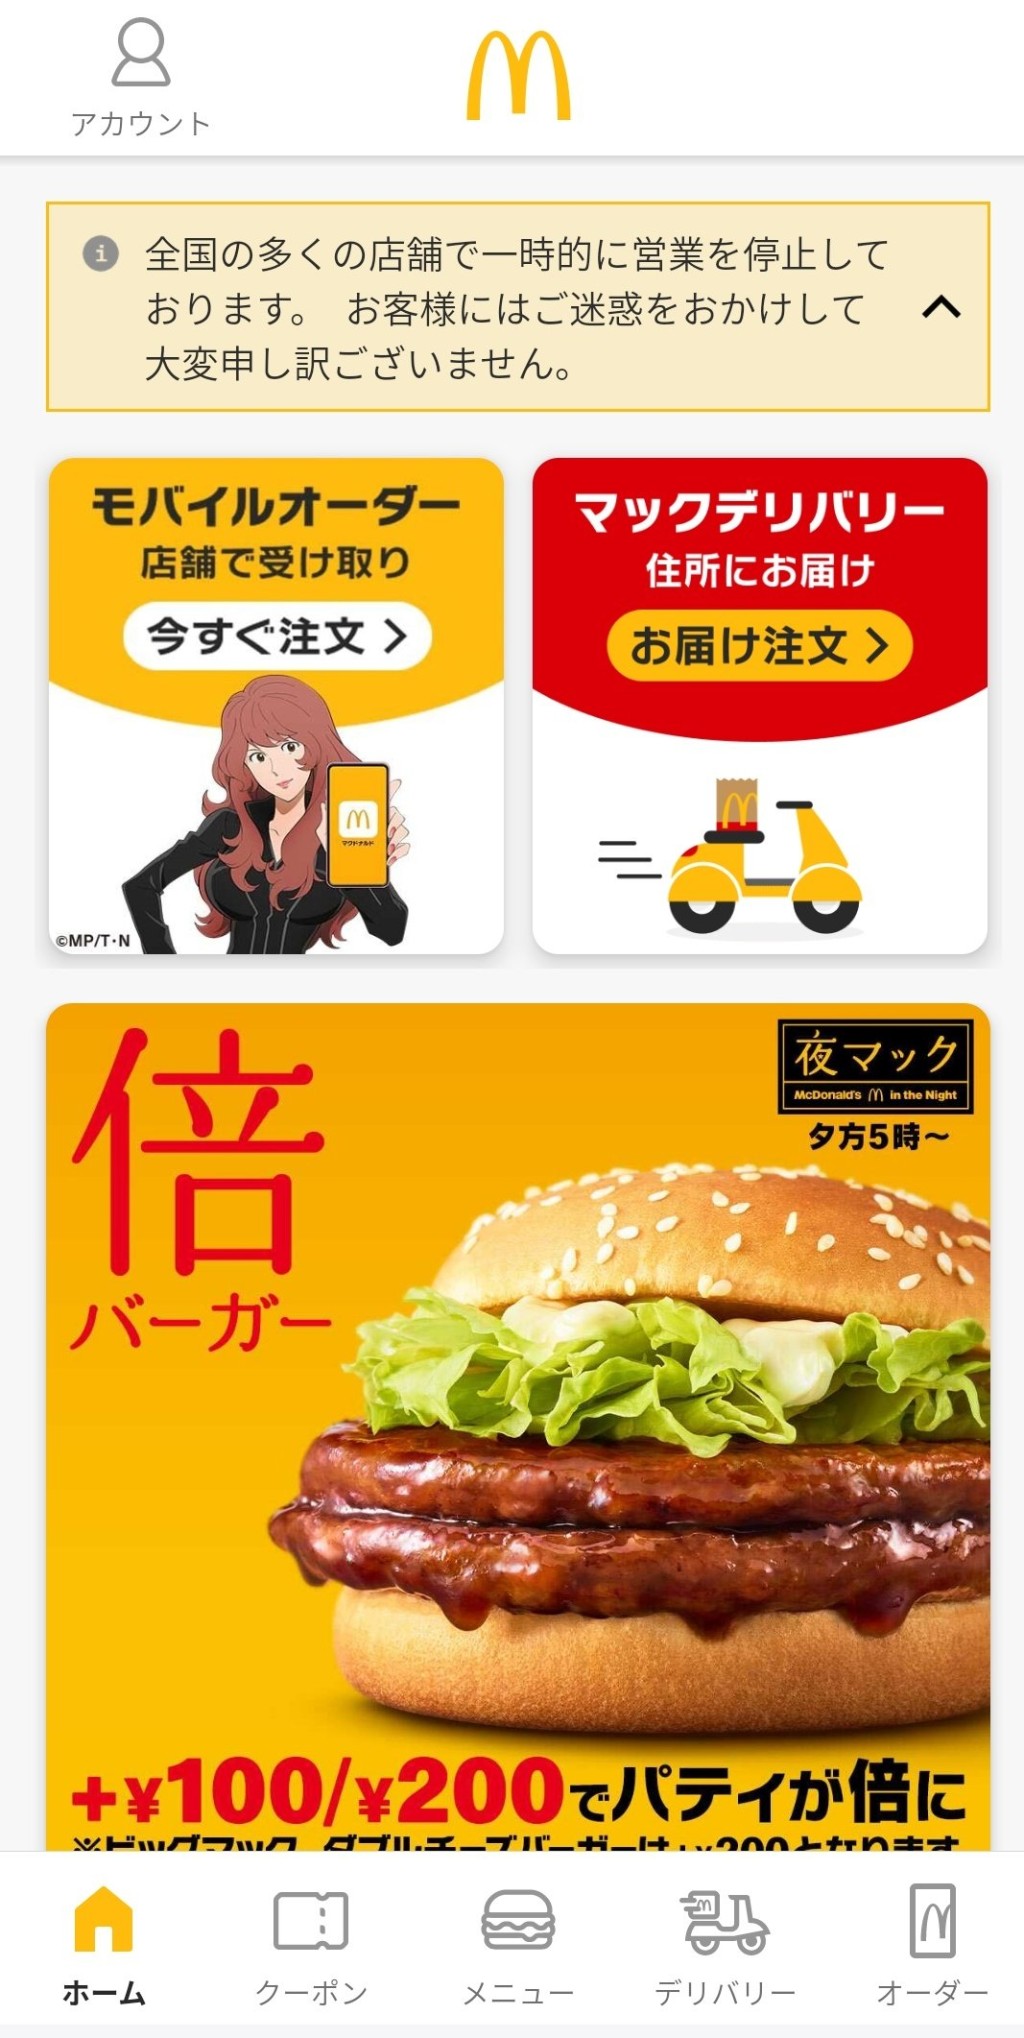 日本麥當勞手機程式「全國多店暫停營業」通告置頂。